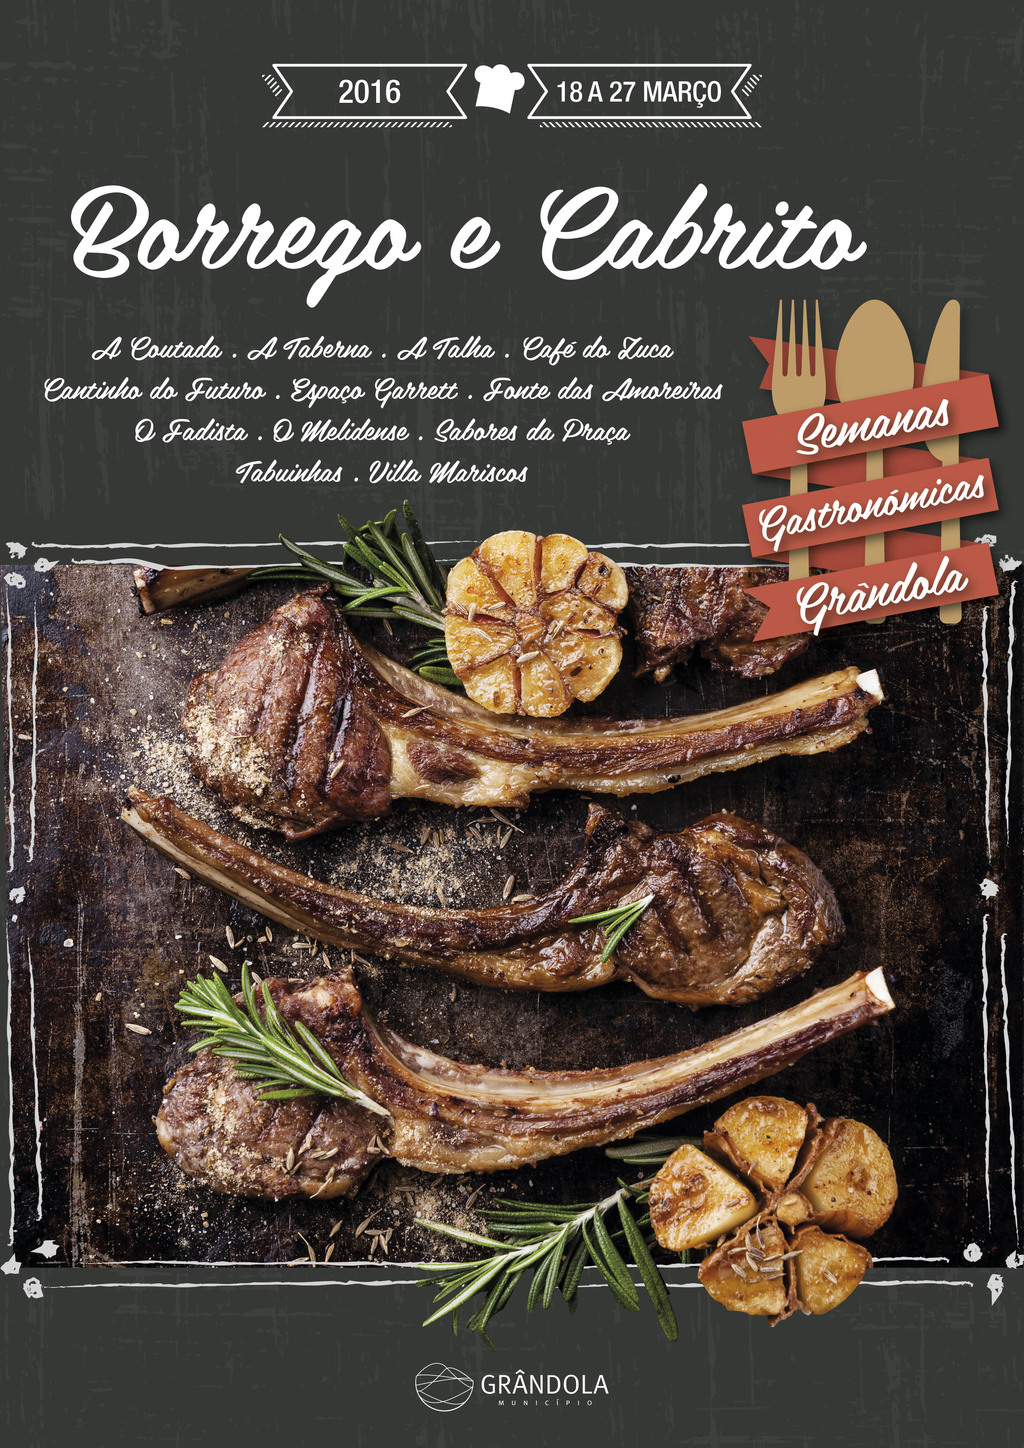 Grândola apresenta Semana Gastronómica do Borrego e Cabrito